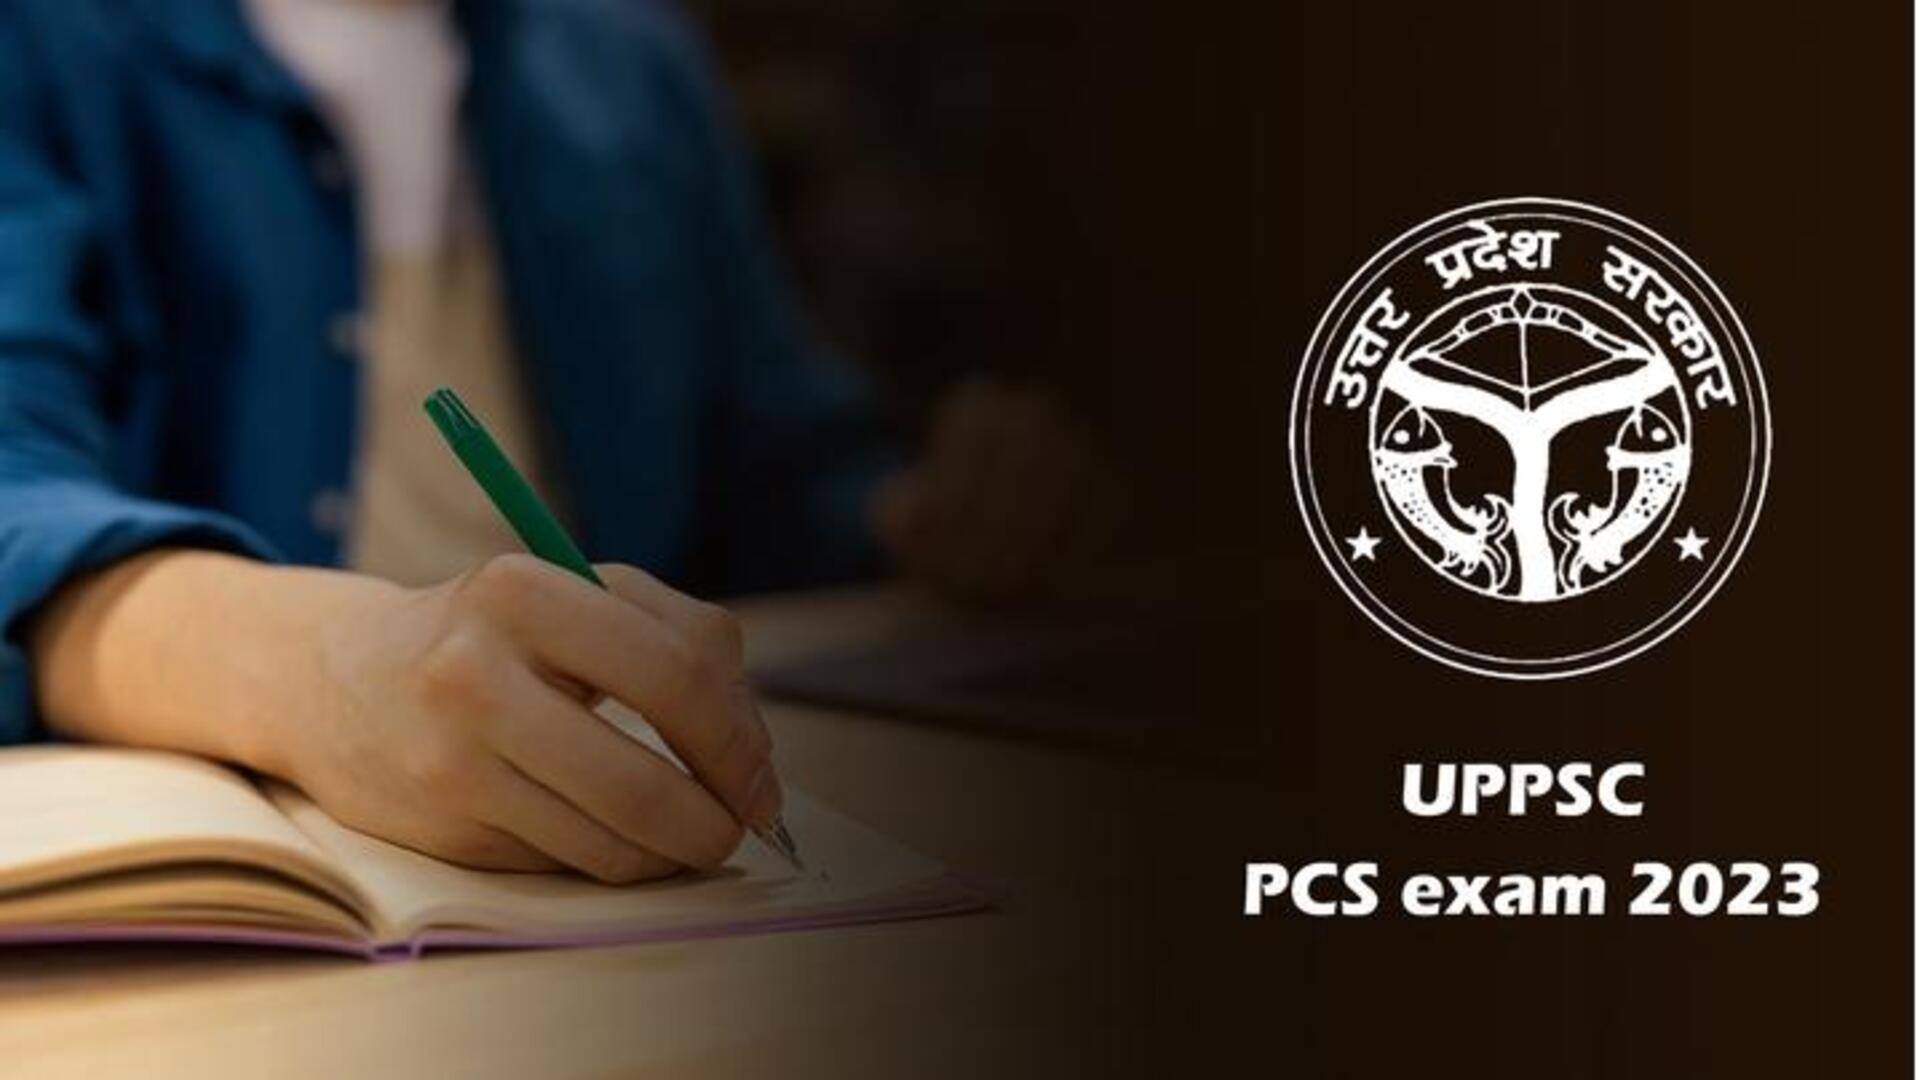 UPPSC मुख्य परीक्षा के लिए पंजीकरण शुरू, 23 सितंबर से शुरू होगी परीक्षा